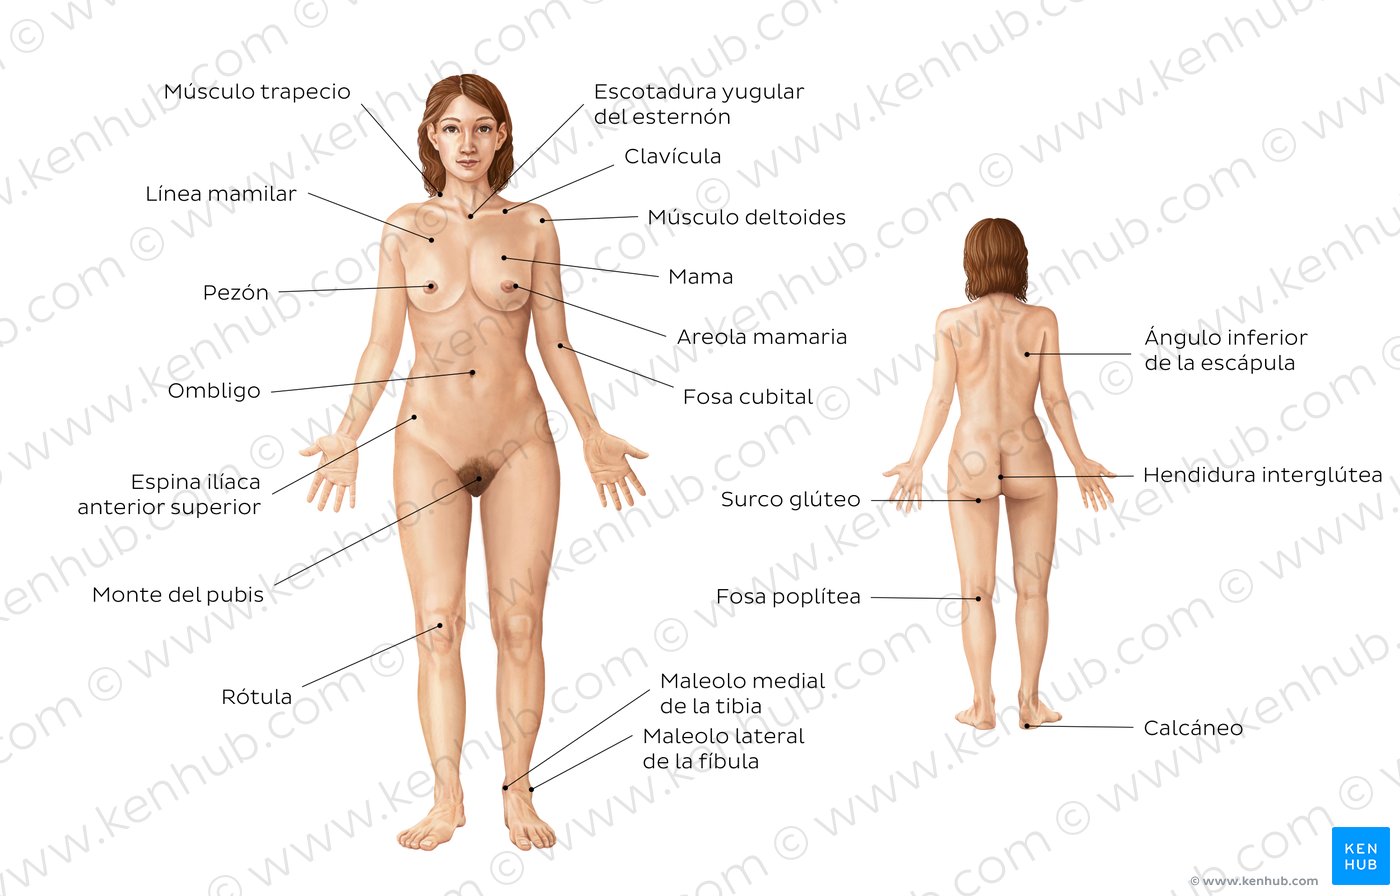 Anatomía de la superficie corporal